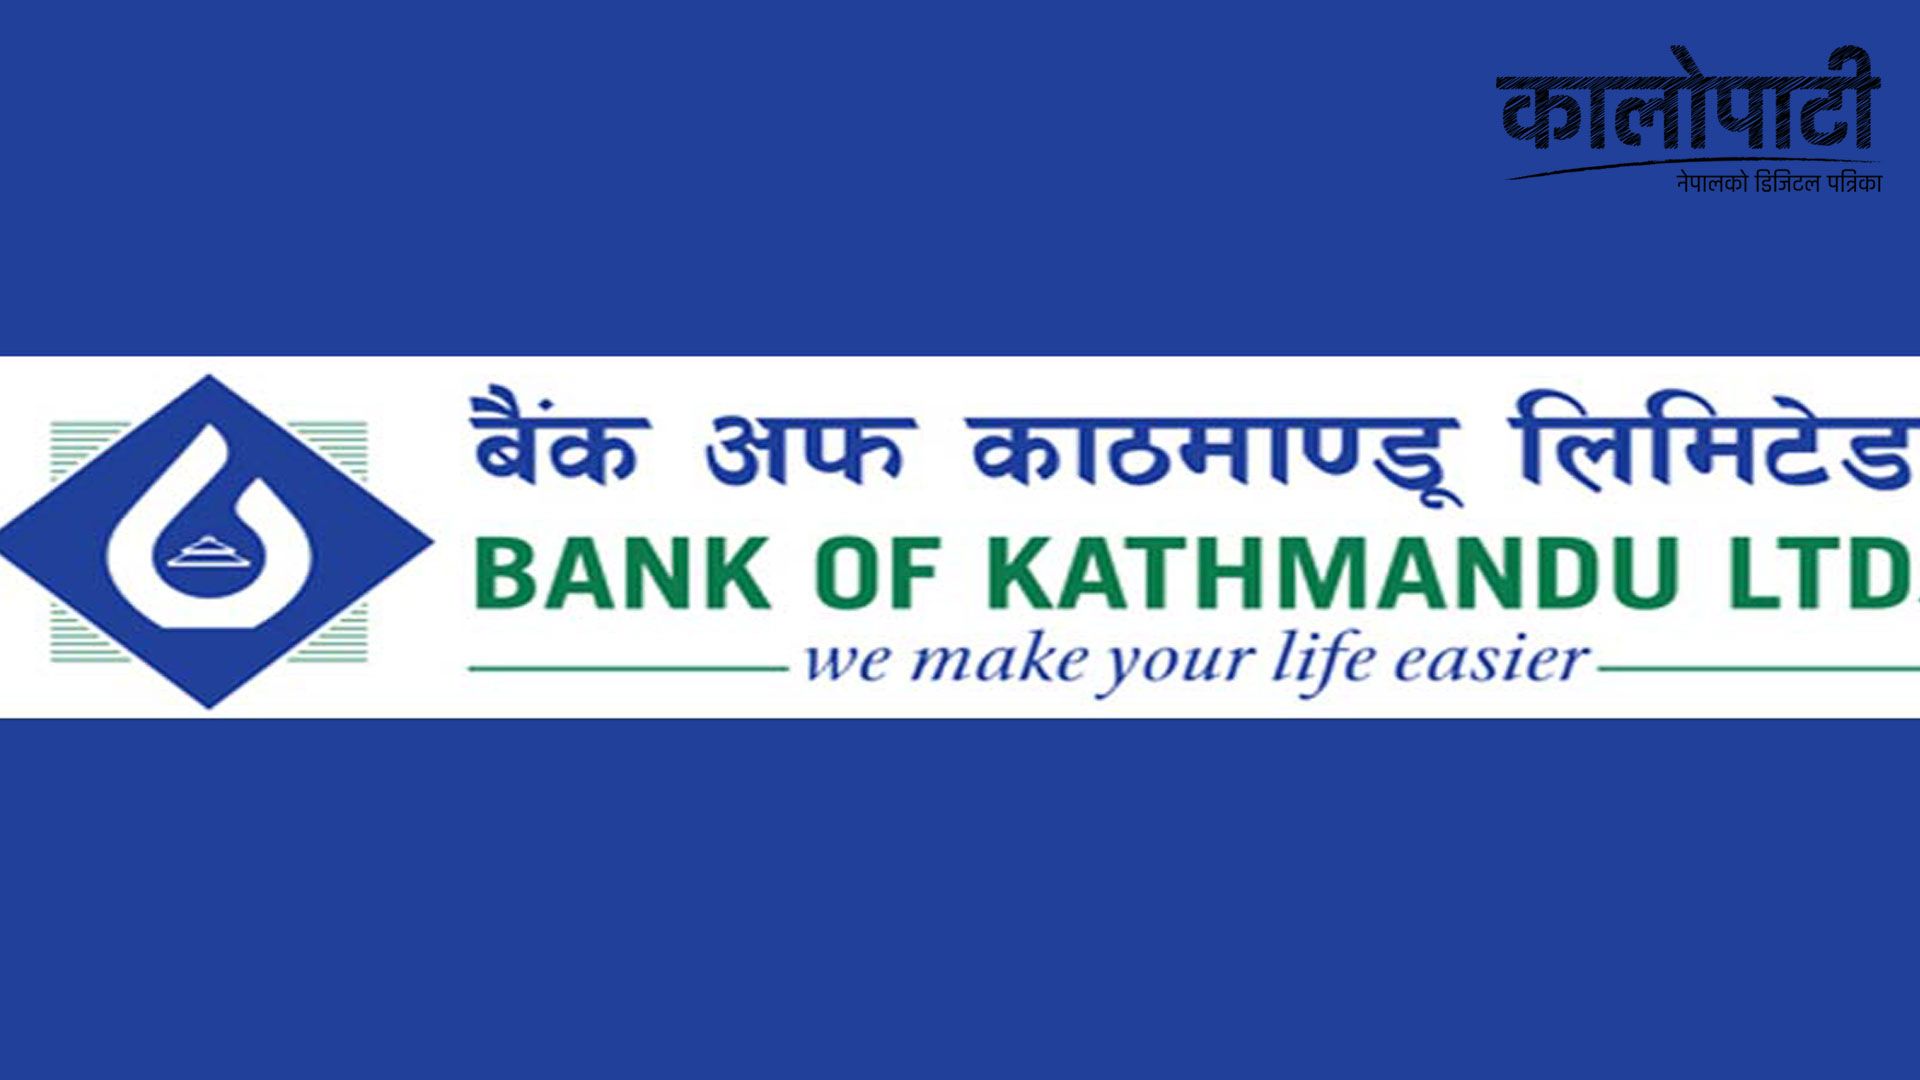 बैंक अफ काठमाण्डू लिमिटेडको हेल्पलाईन सेवा सुचारु